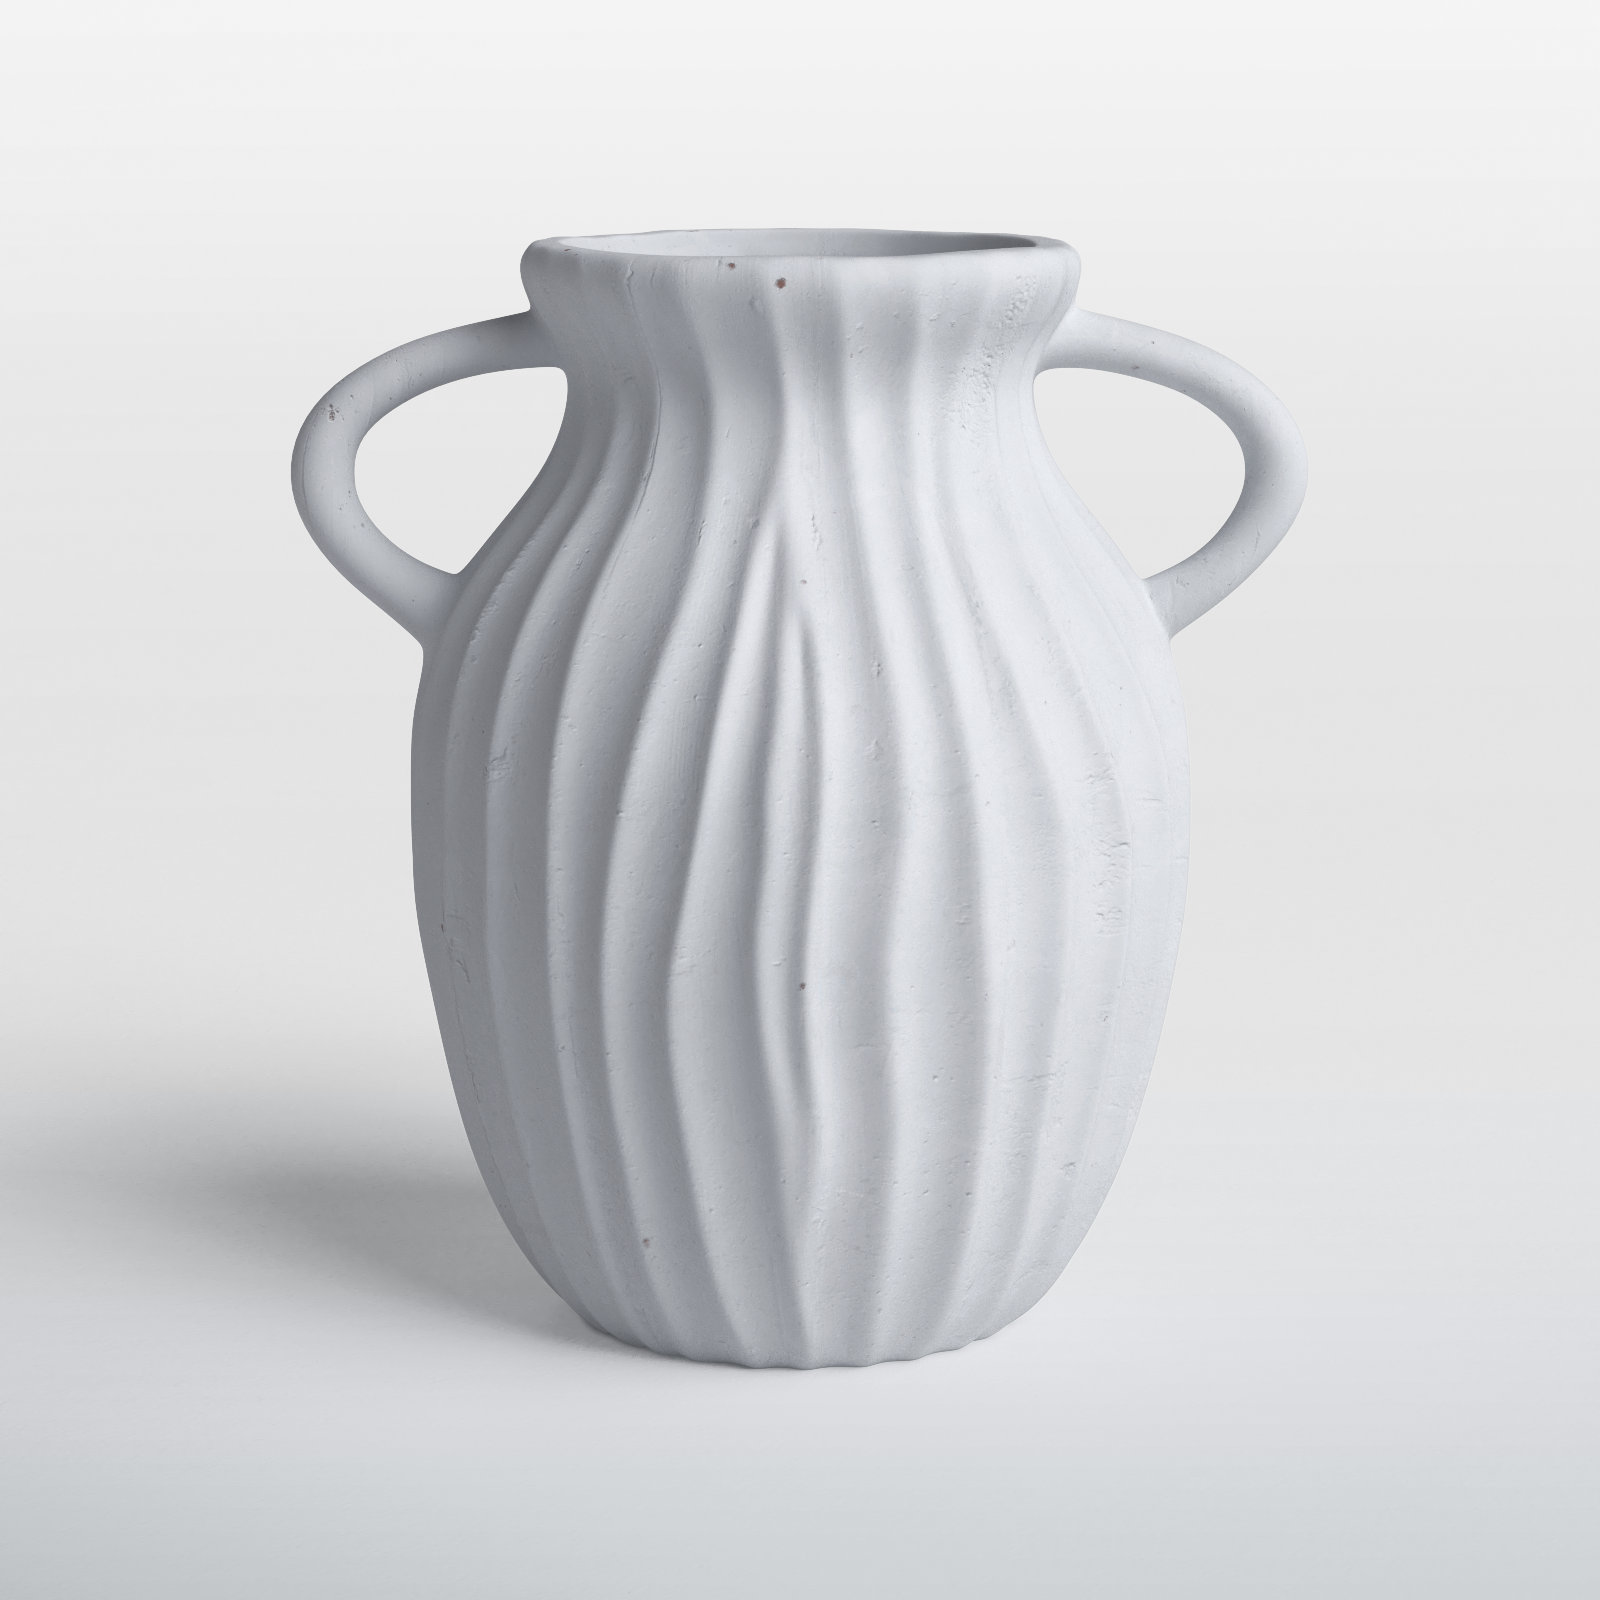 Handmade ceramic ikebana vase - From Britain with Love